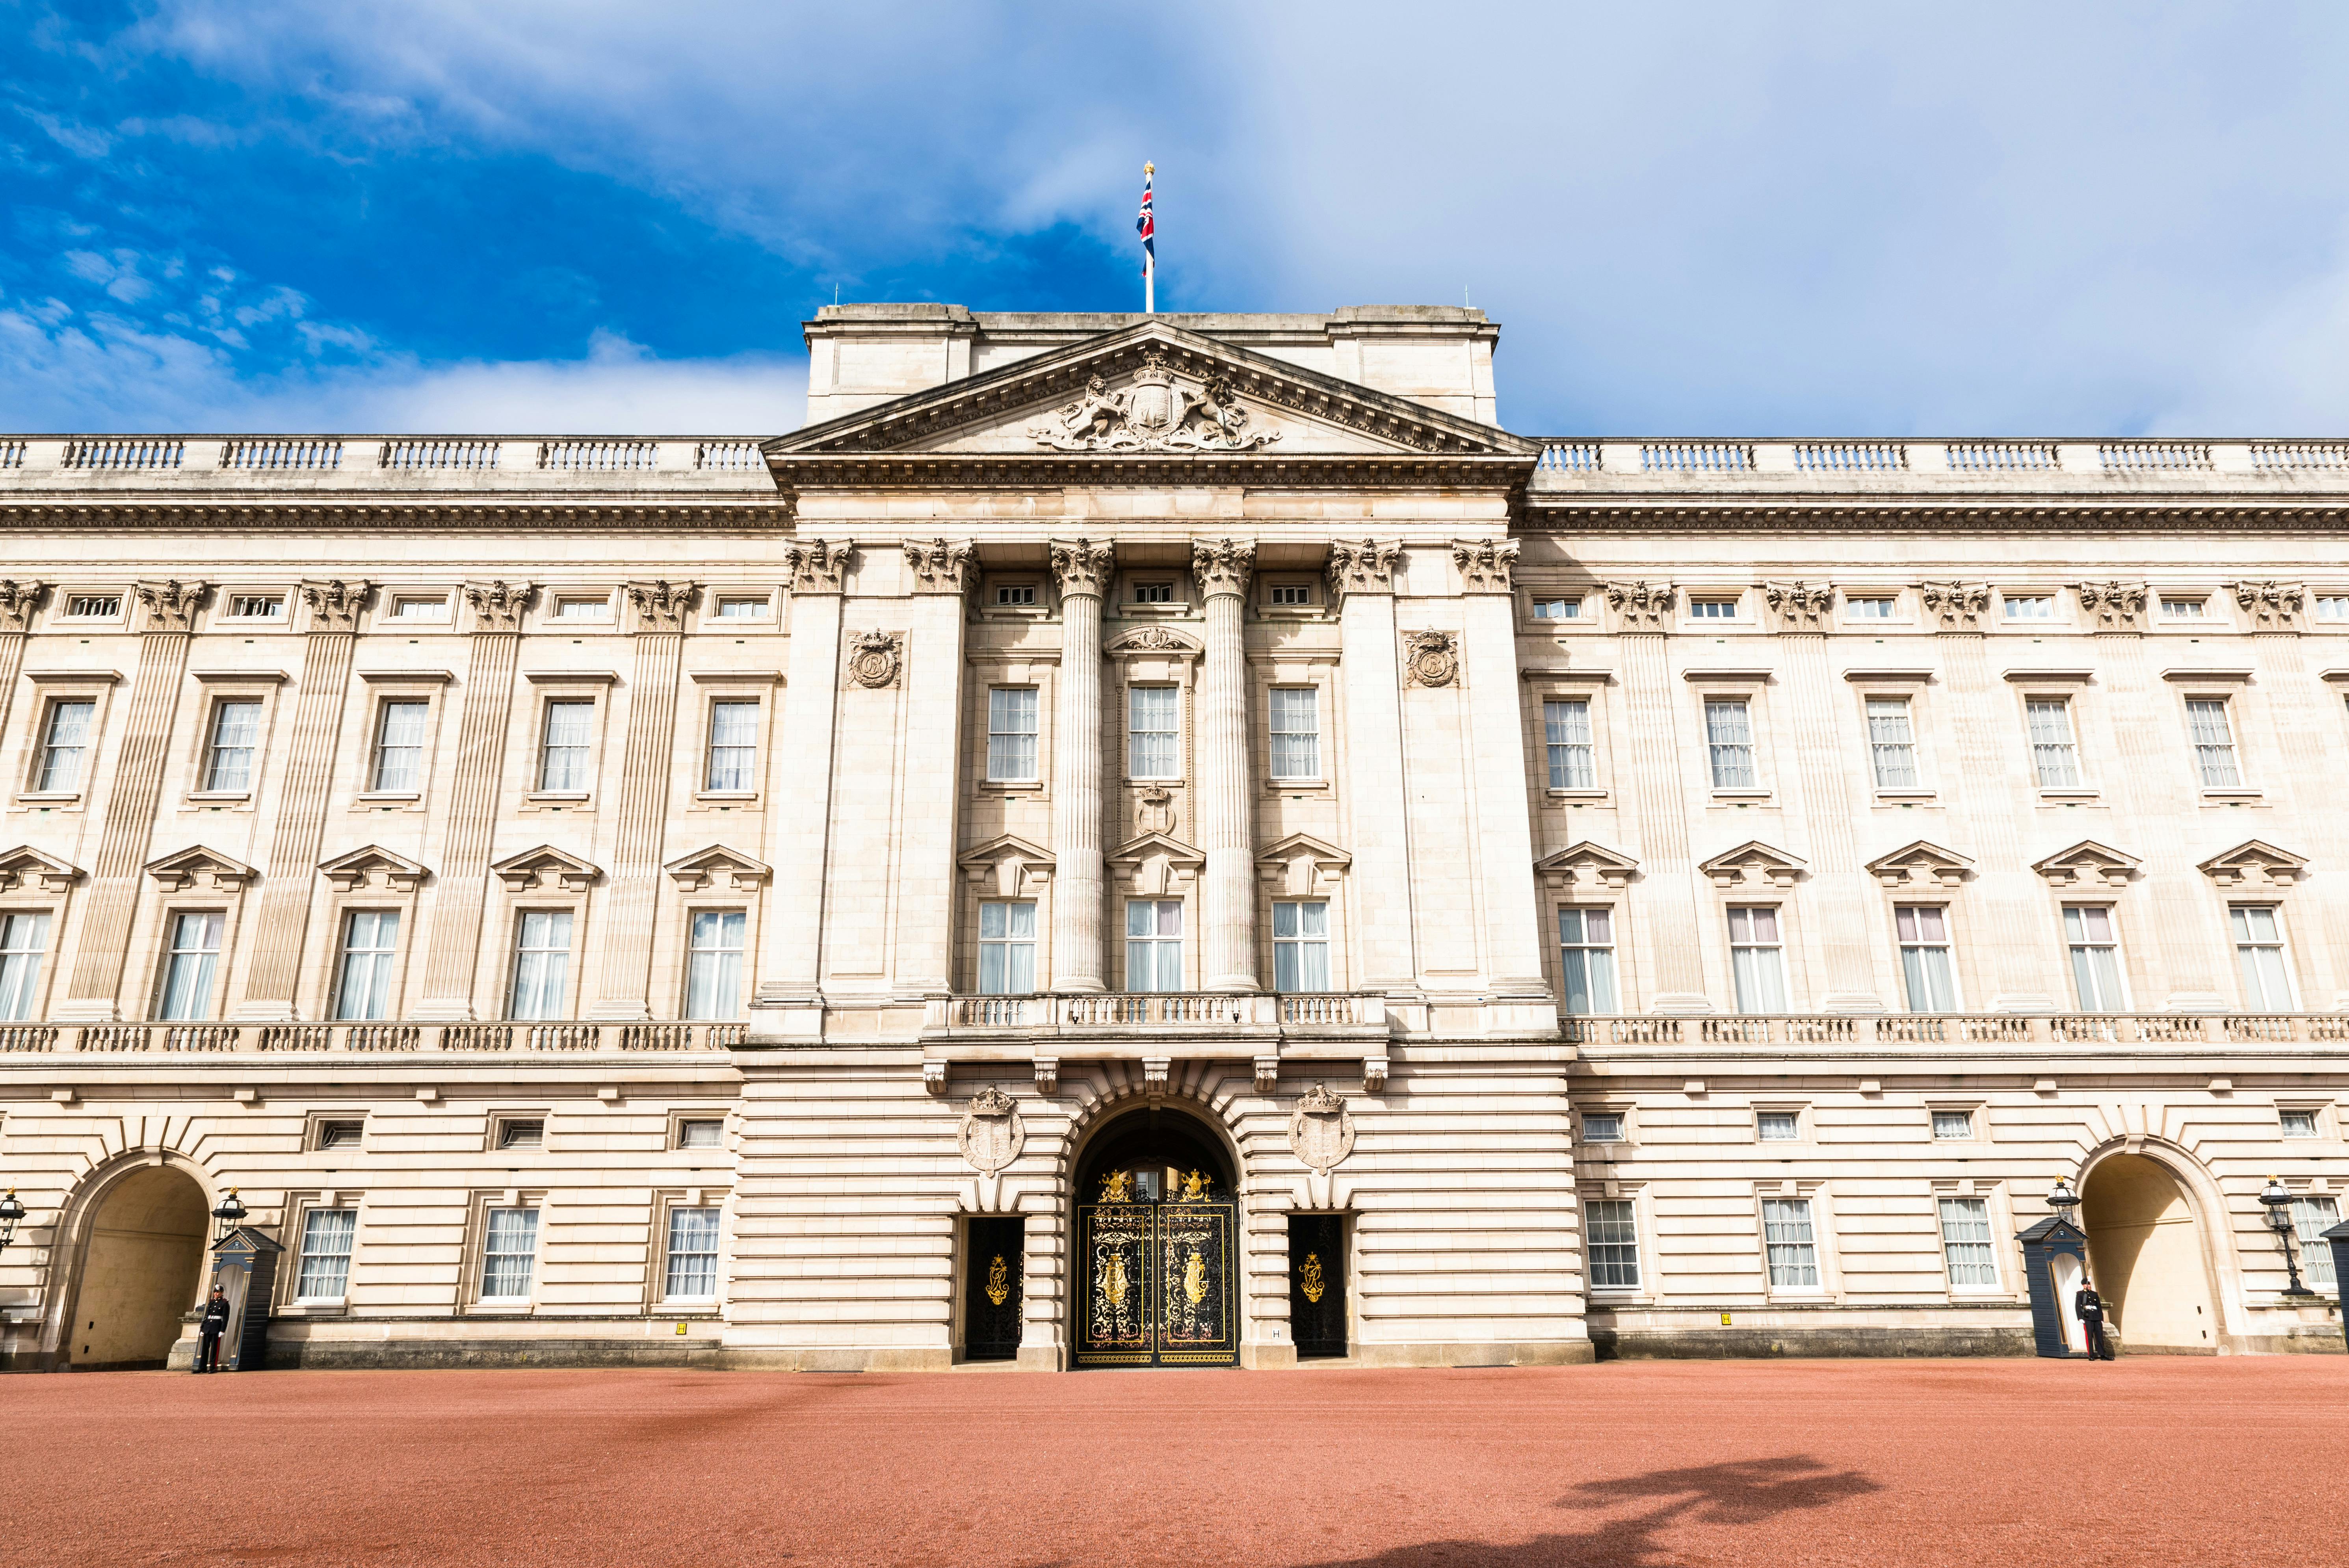 Biglietti per Buckingham Palace con tour reale a piedi